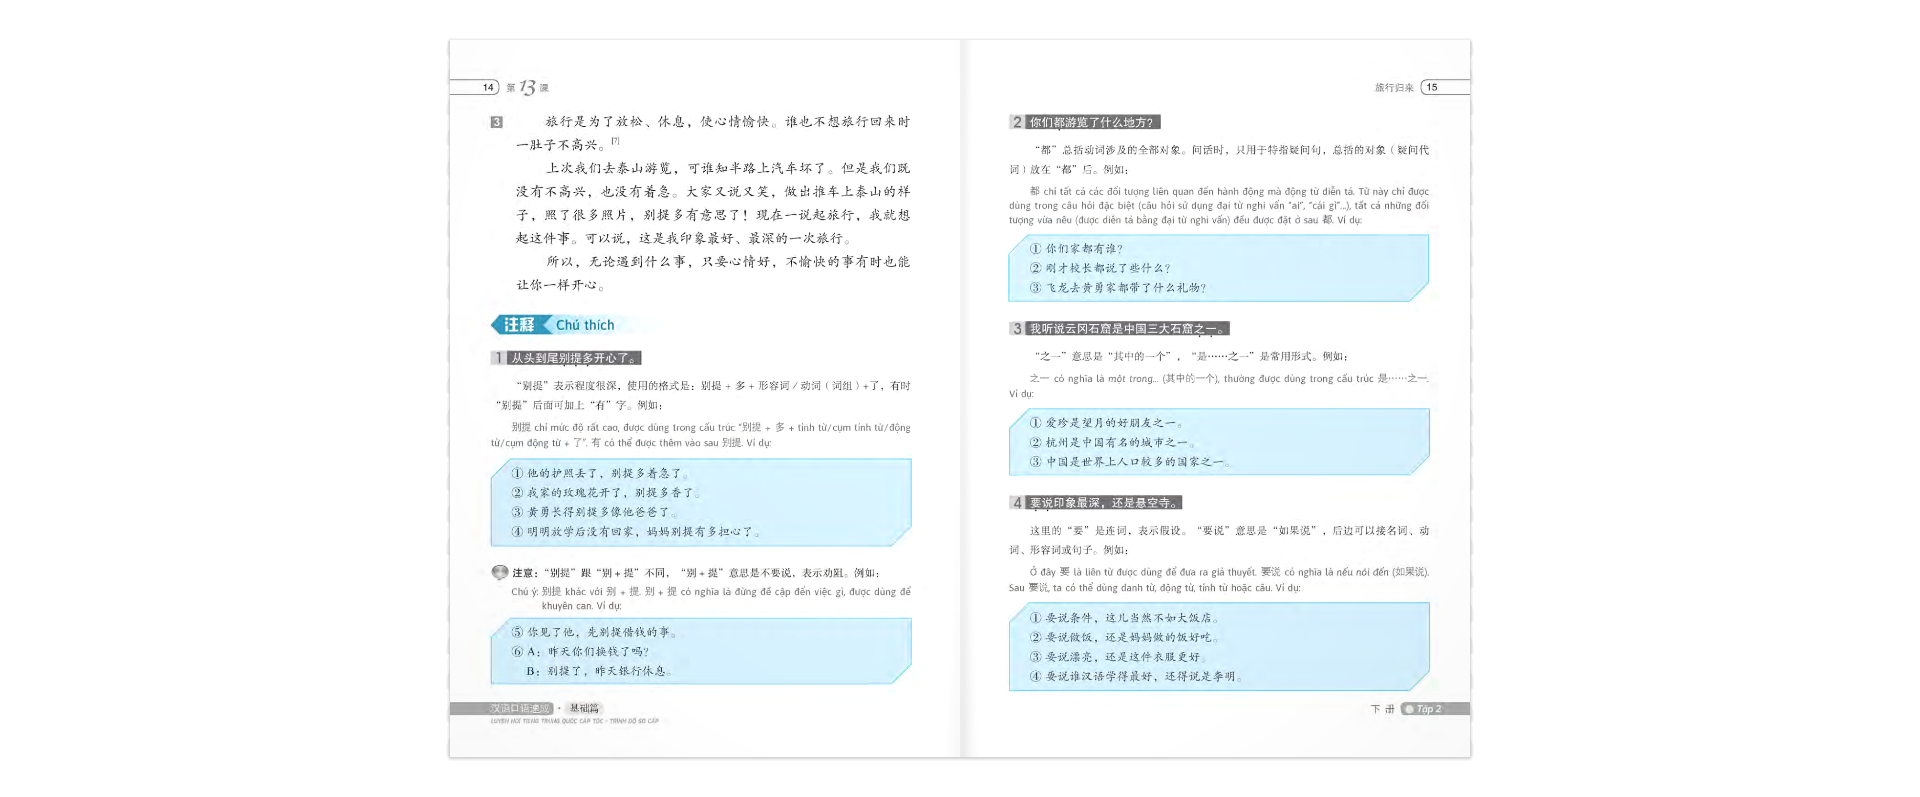 Luyện Nói Tiếng Trung Quốc Cấp Tốc - Trình Độ Sơ Cấp - Tập 2 Cd PDF